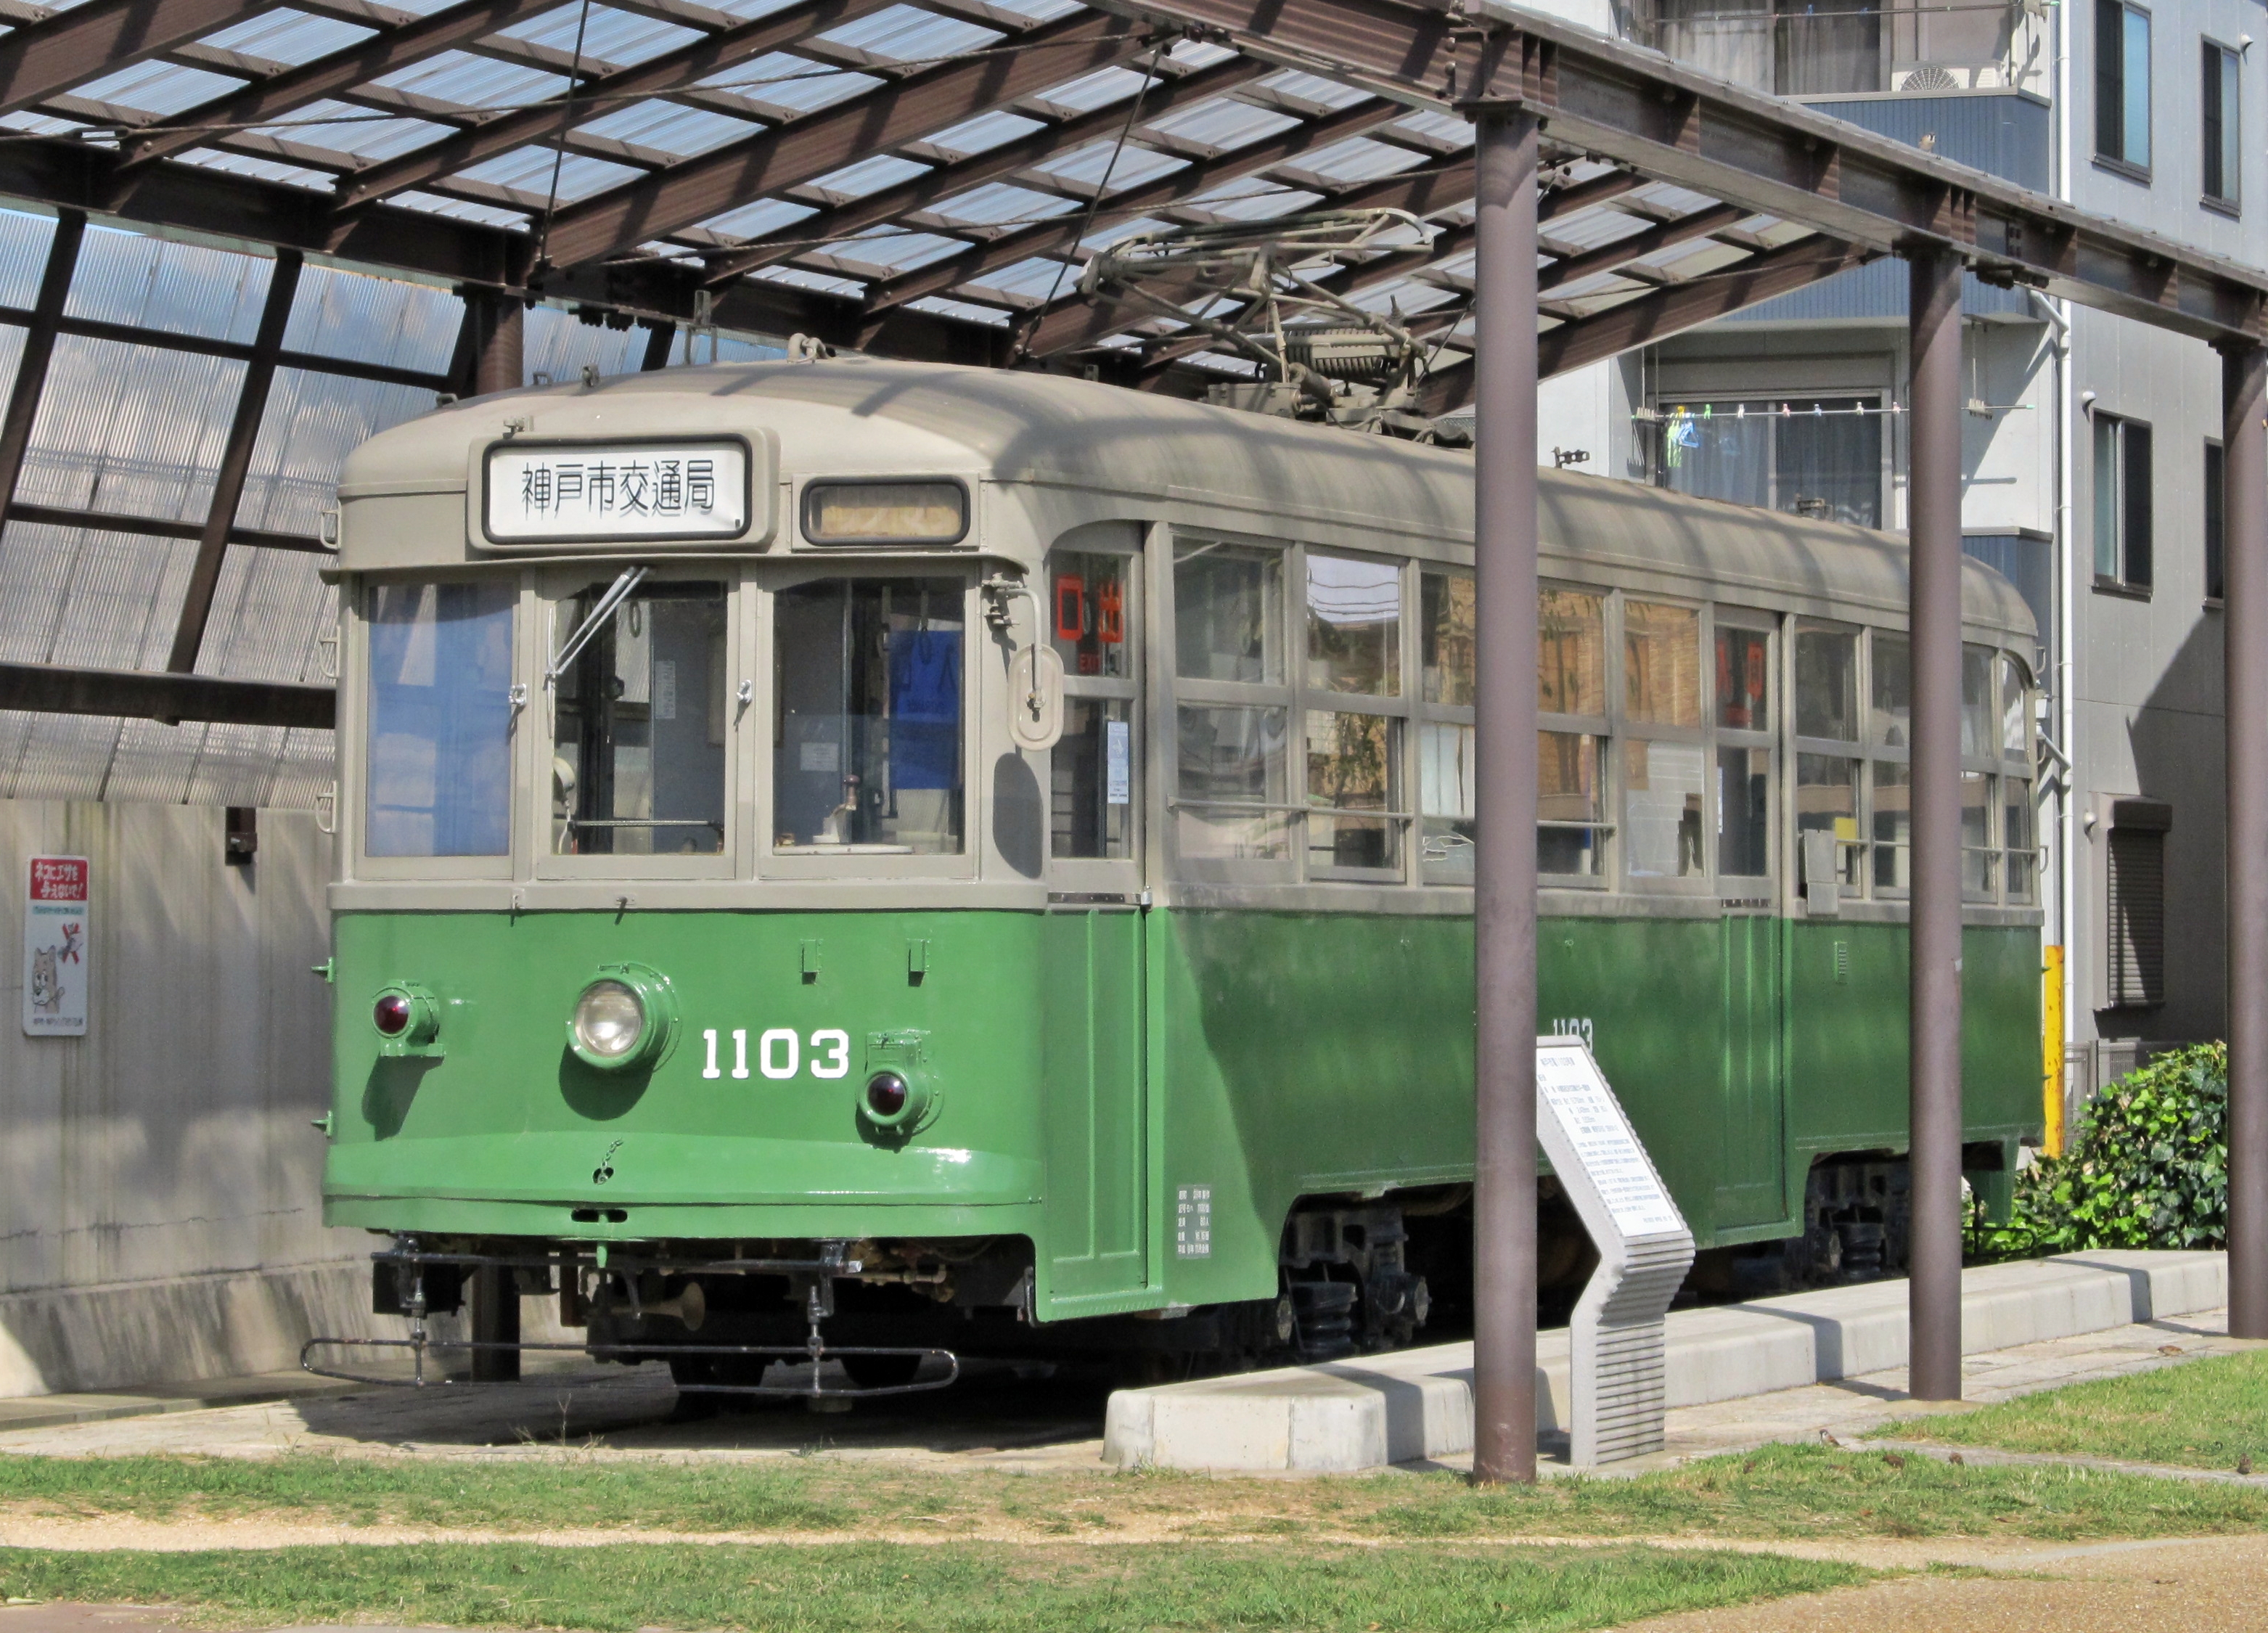 神戸市交通局1100形電車 - Wikipedia